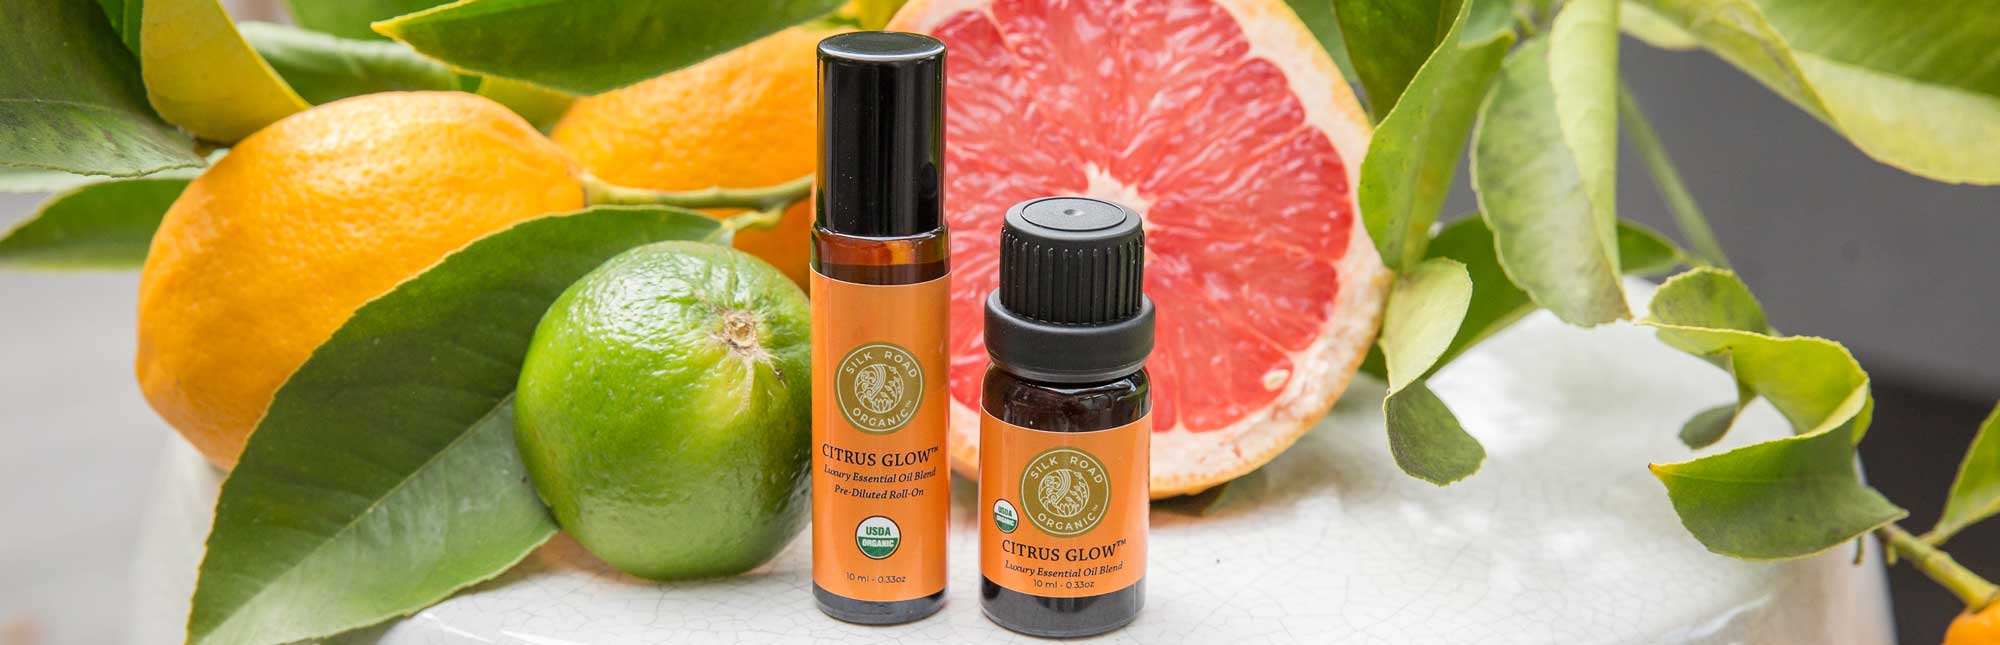 citrus glow organic essential oil blend bright uplifting citrus notes lemon bergamot orange grapefruit